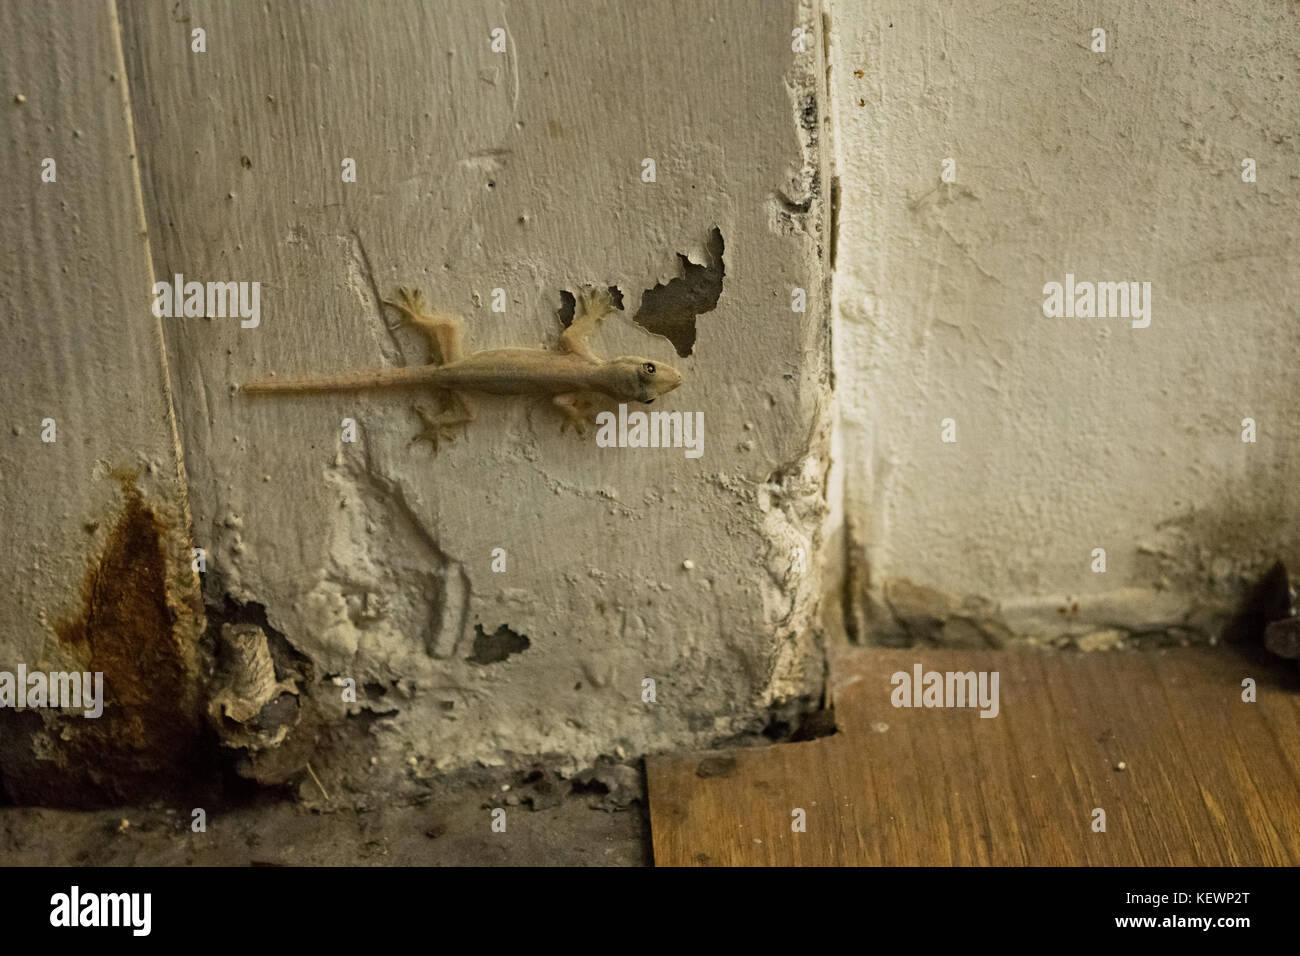 Asianreptile maison commune, gecko Hemidactylus frenatus, hanging on collé à un mur blanc d'une maison à Phnom Penh, Cambodge, Asie du Sud Est Banque D'Images